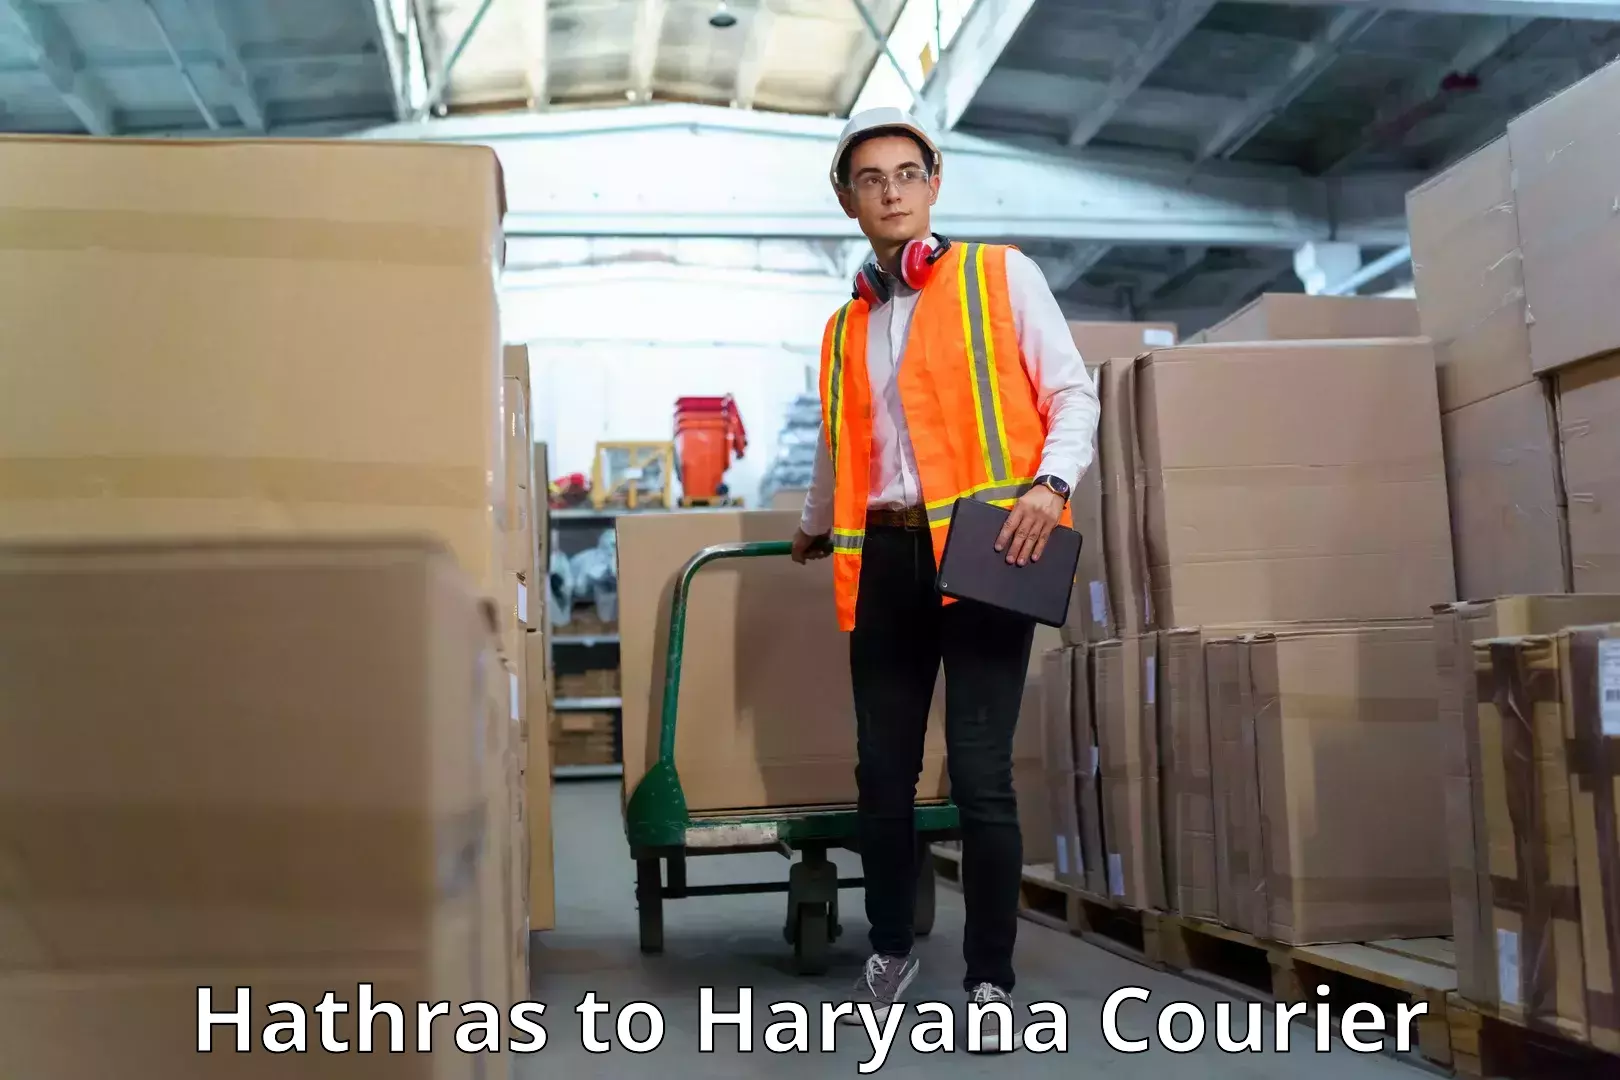 Secure packaging Hathras to Chirya